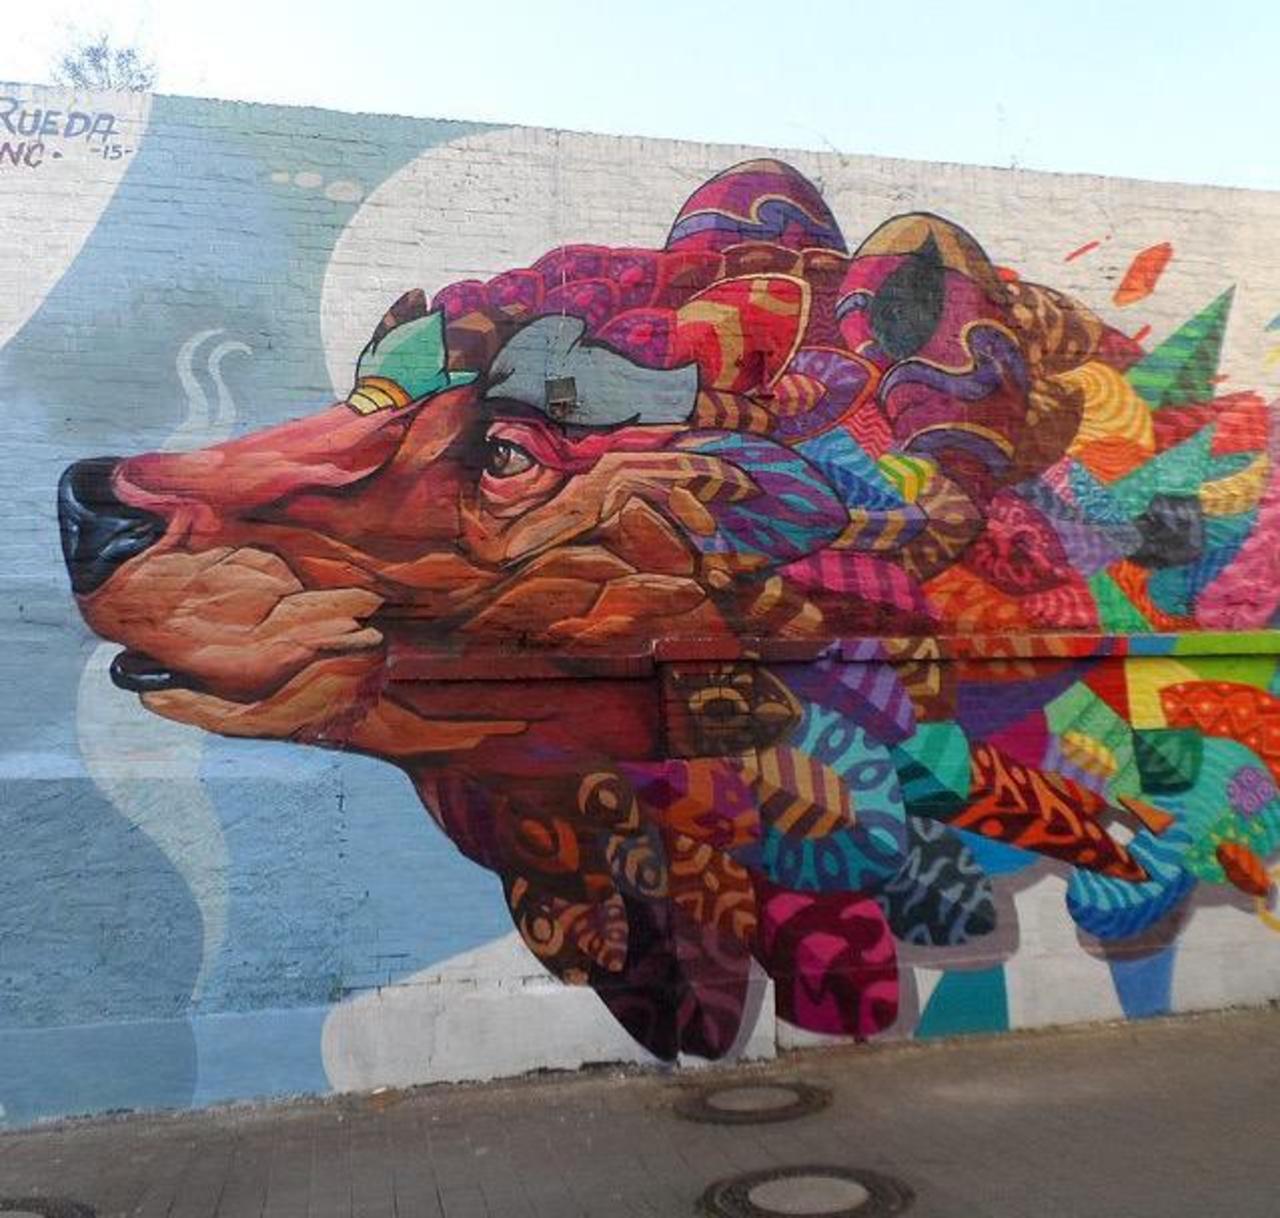 RT GoogleStreetArt: Farid Rueda Street Art 

#art #graffiti #mural #streetart http://t.co/UrZwxZODt5 https://goo.gl/7kifqw